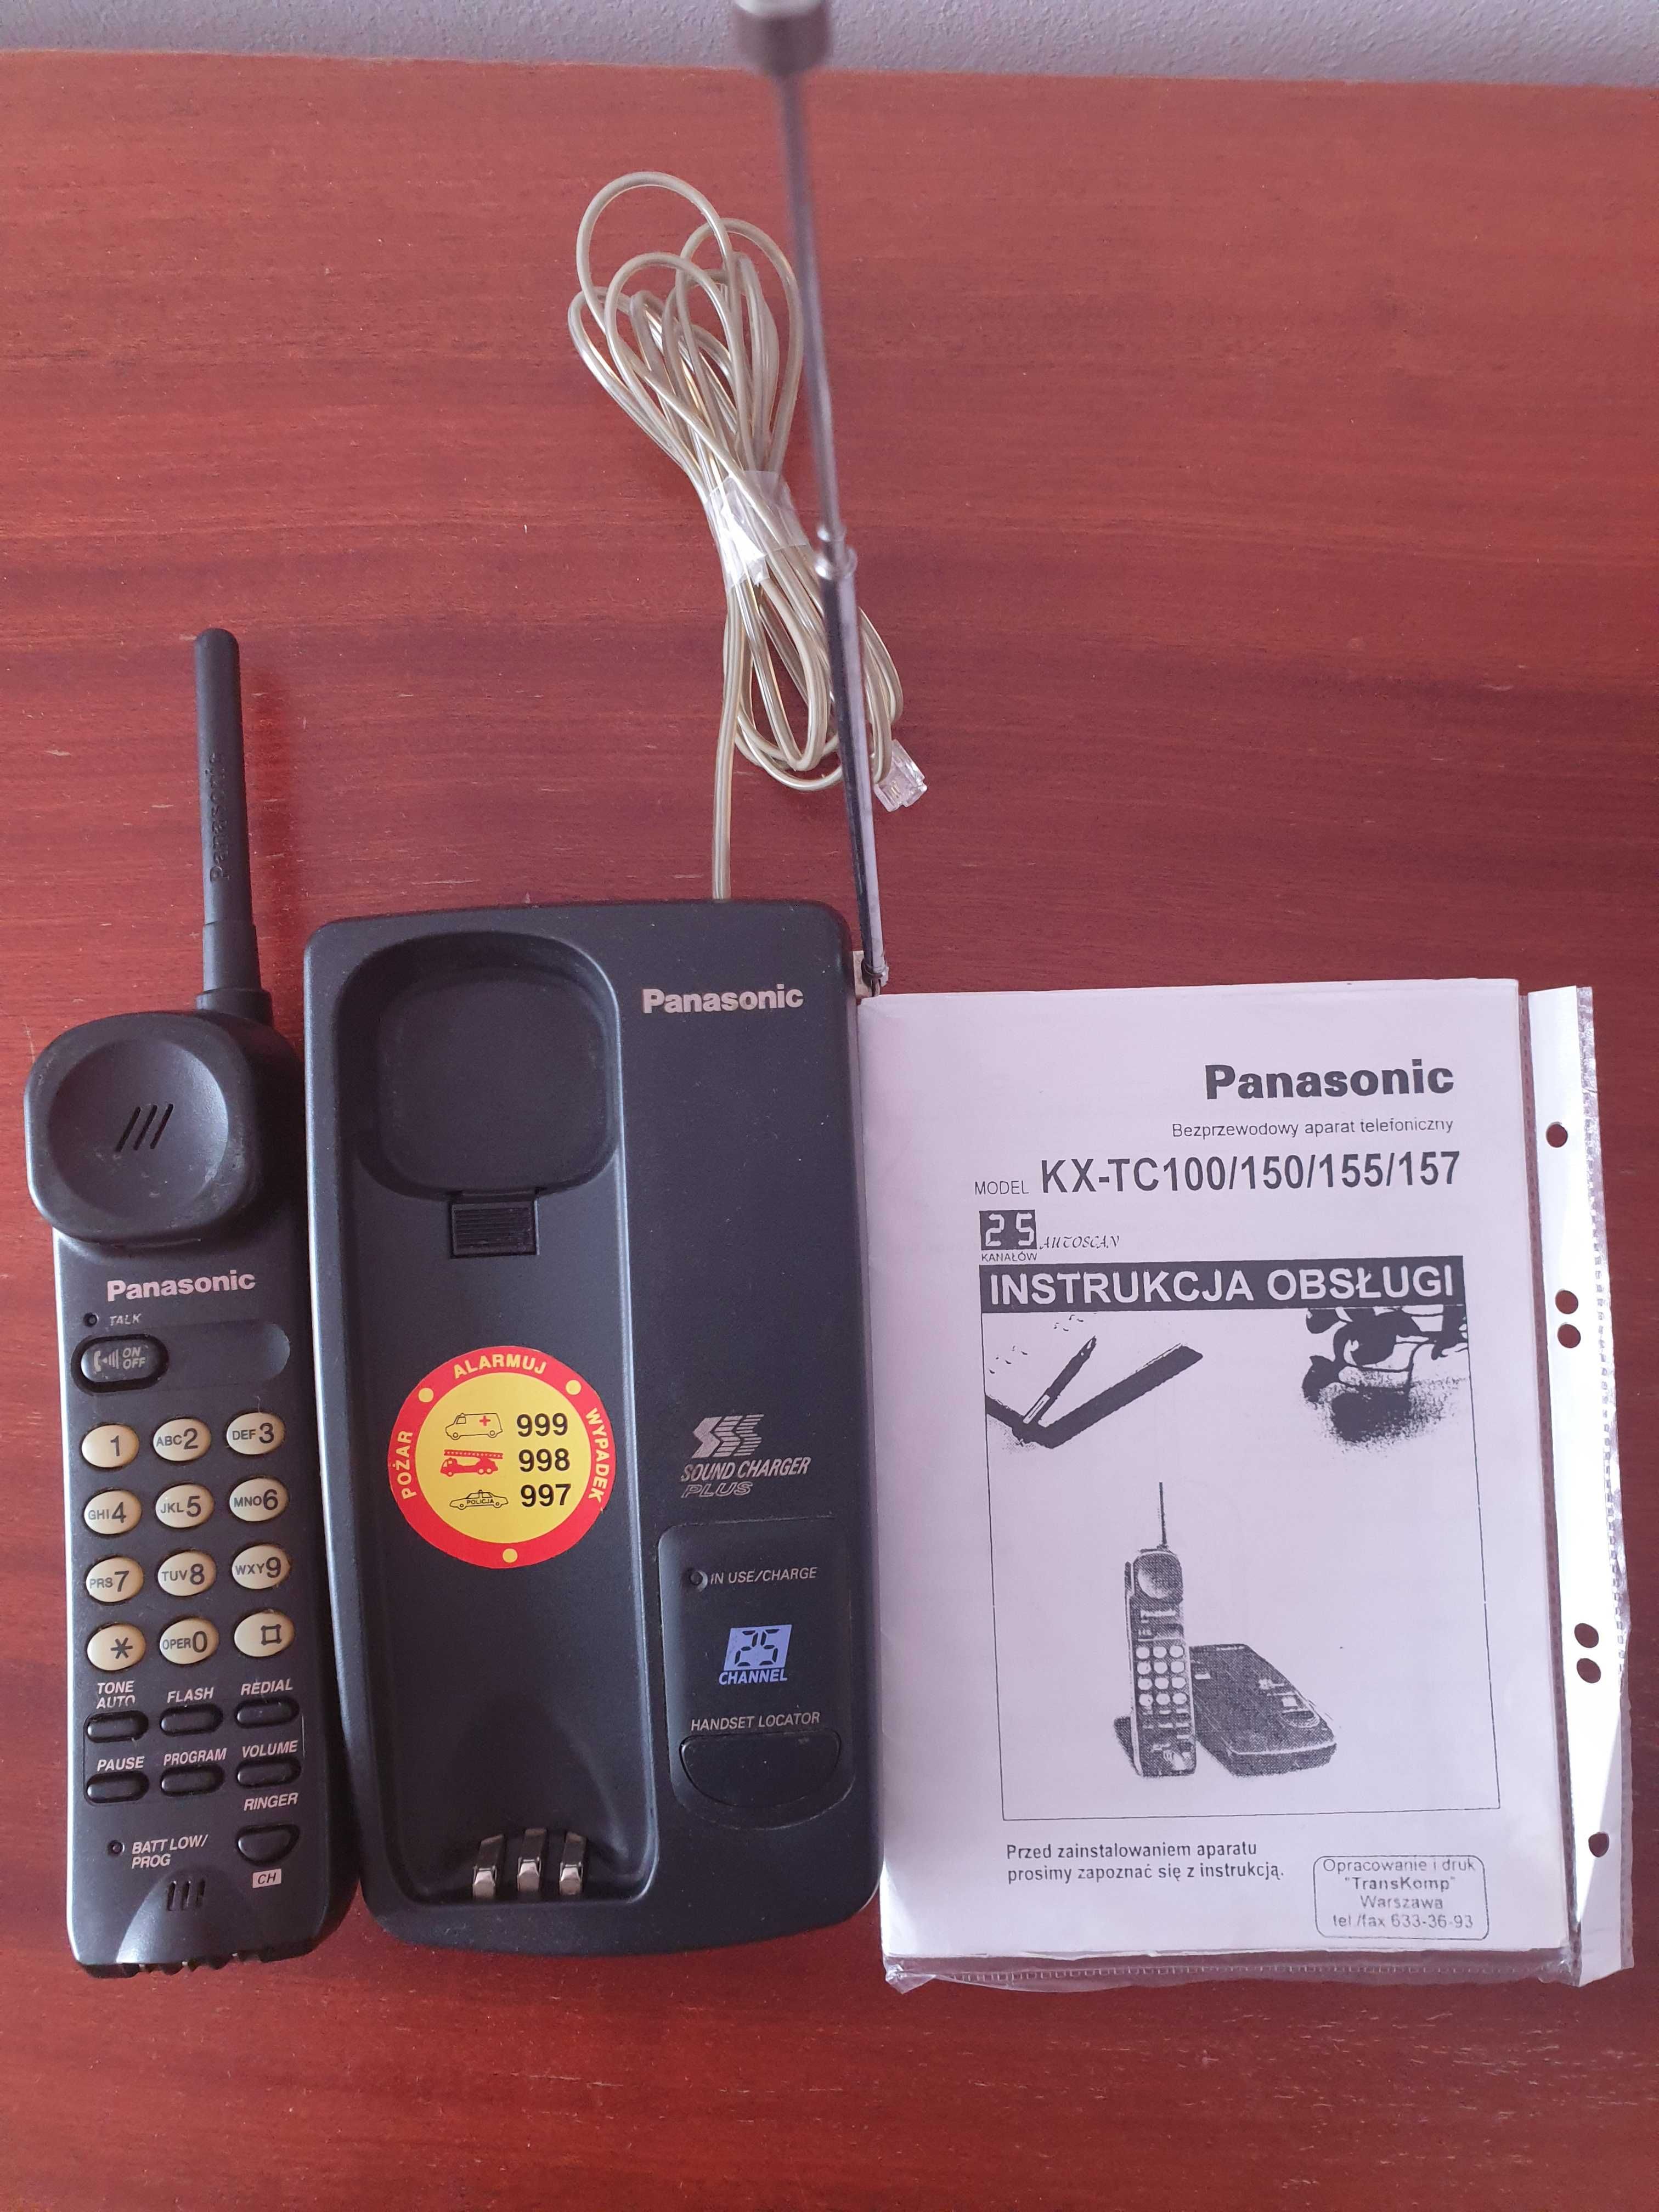 Bezprzewodowy aparat telefoniczny Panasonic KX‐TC 155 B